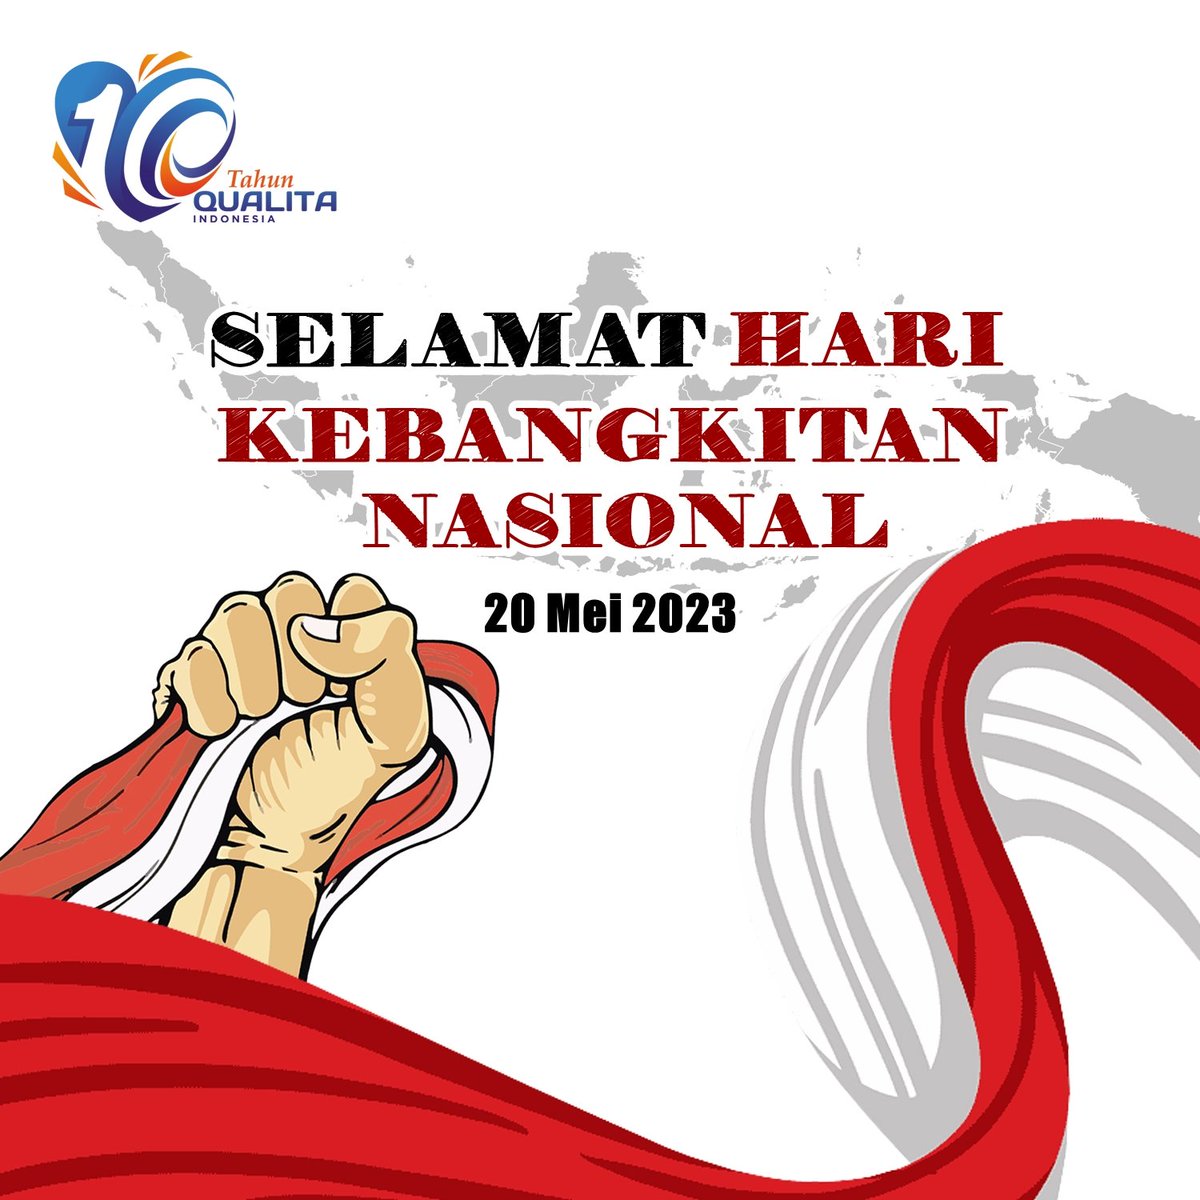 Selamat memperingati Hari Kebangkitan Nasional, 20 Mei 2023. Kobarkan semangat demi Indonesia yang lebih baik!
.
.
.
#QualitaIndonesia #KebangkitanNasional 
#TechnicalServices #TechnicalMaintenance #FieldManagedService #FieldServiceMonitoring